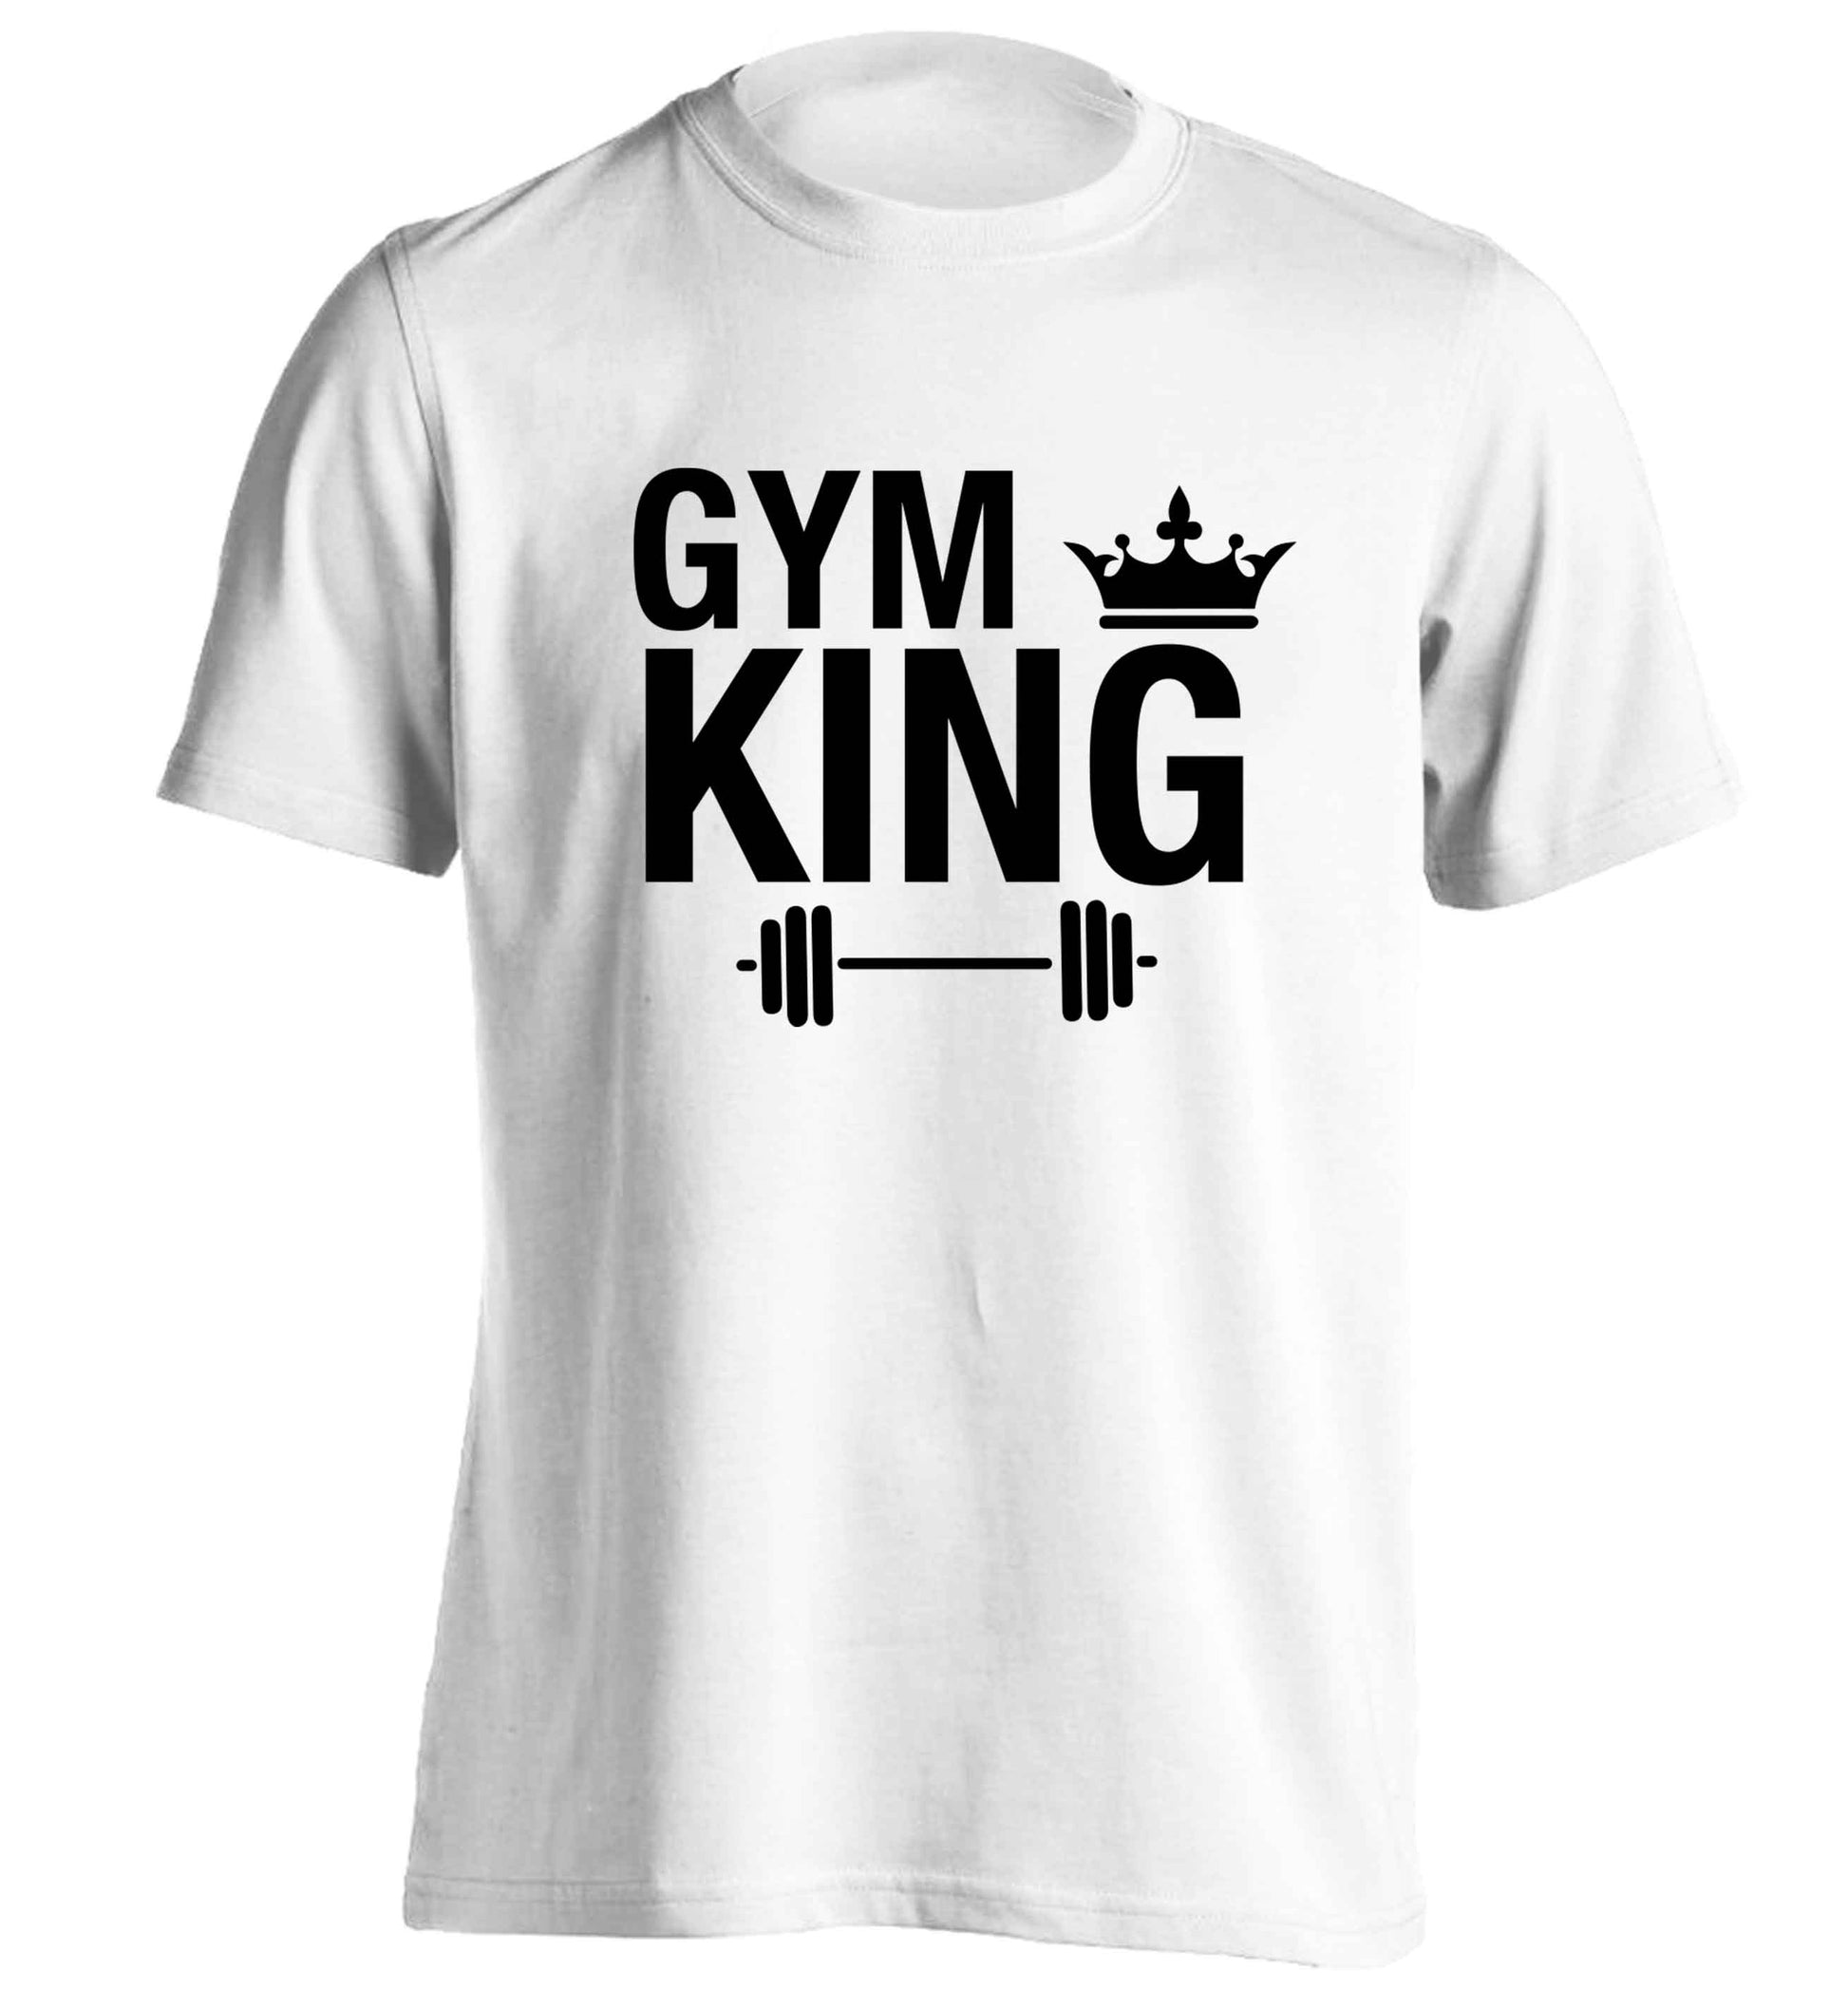 Gym king adults unisex white Tshirt 2XL